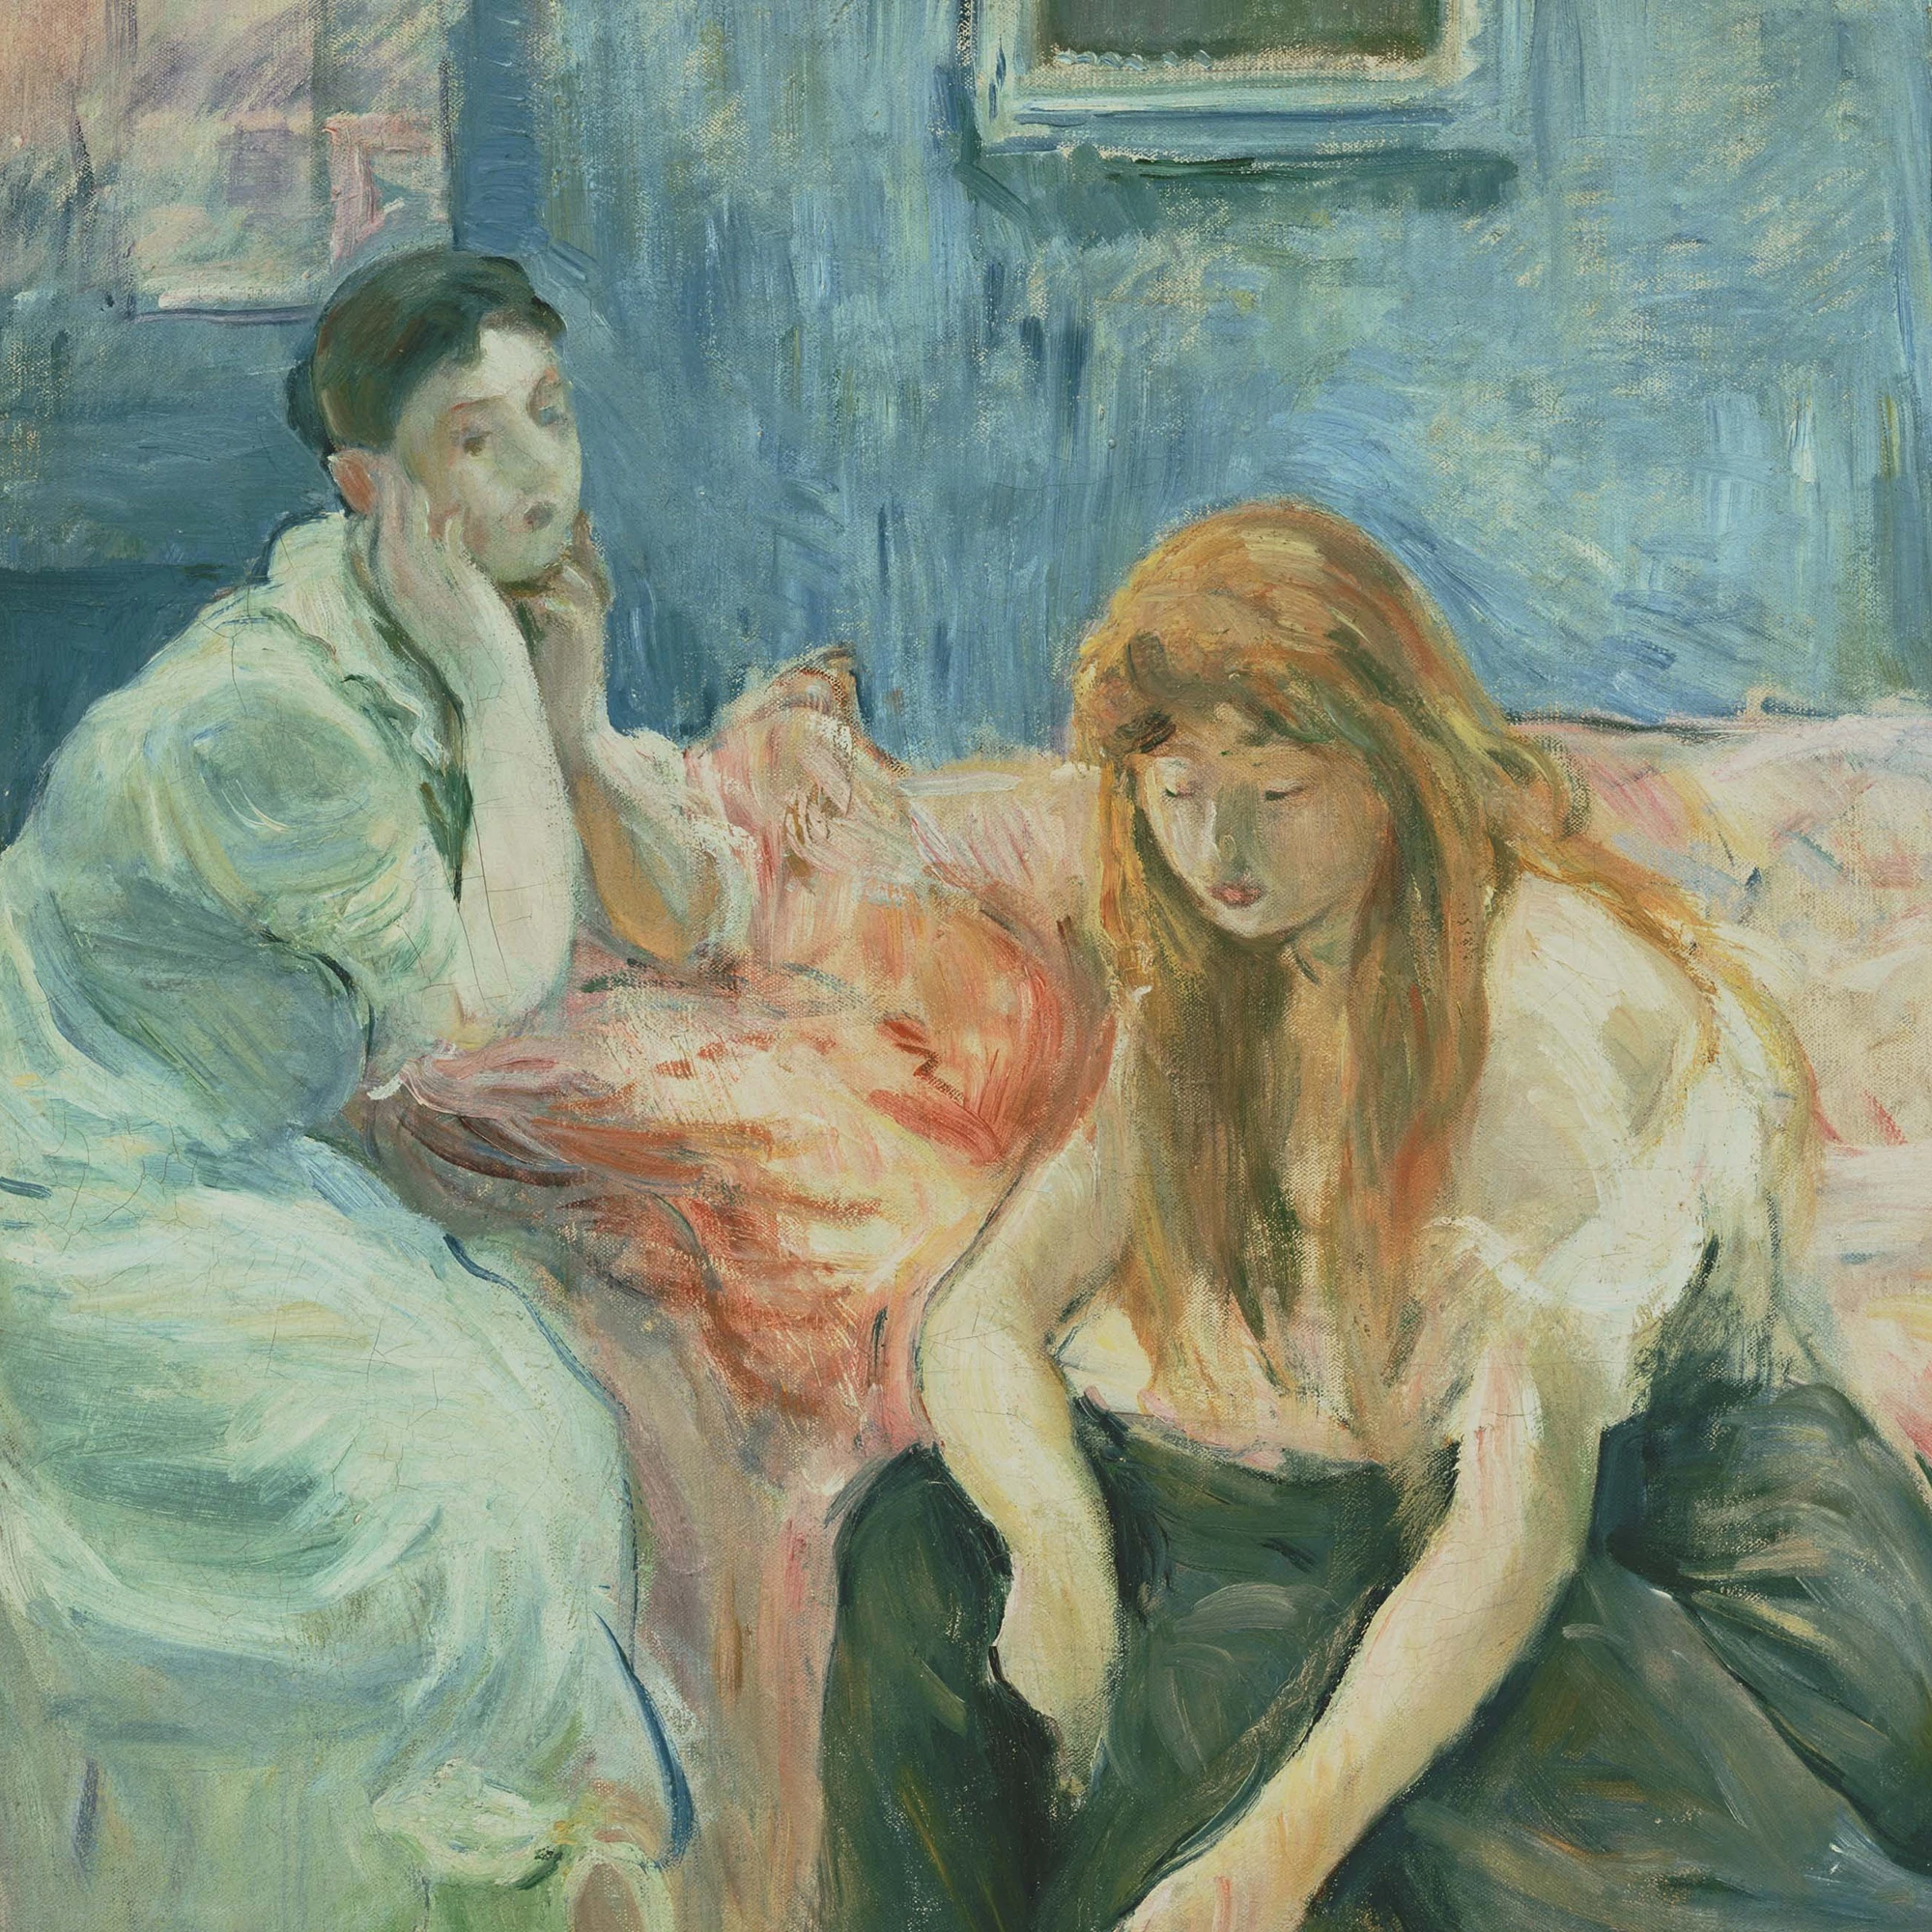 Berthe Morisot, The Artists